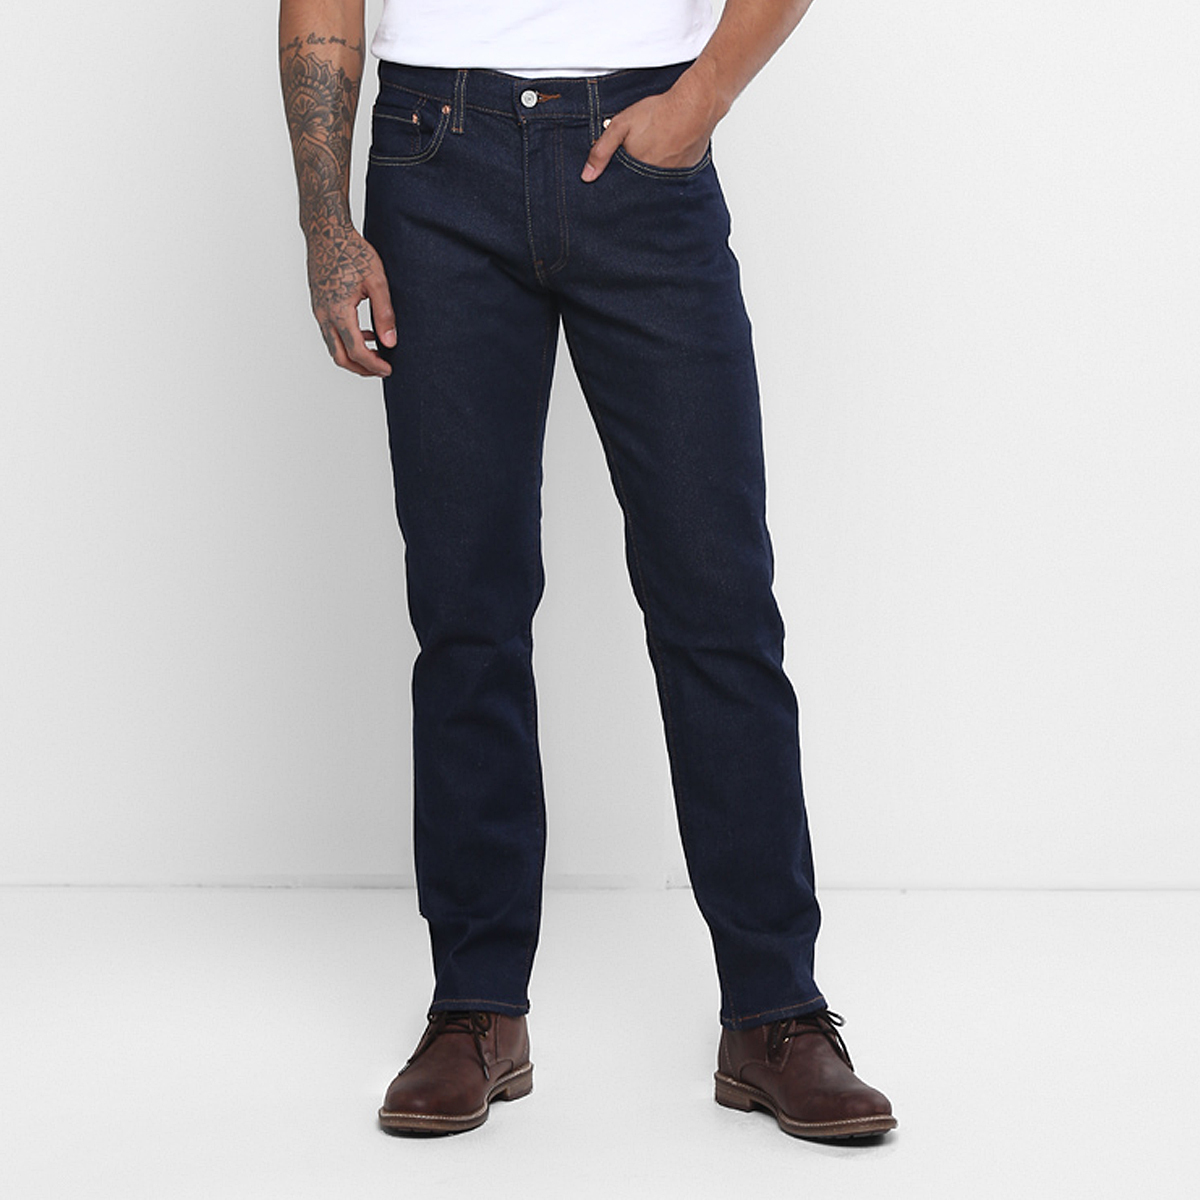 LEVIS MEN Single Length Jeans 18298-0782 Blue 36